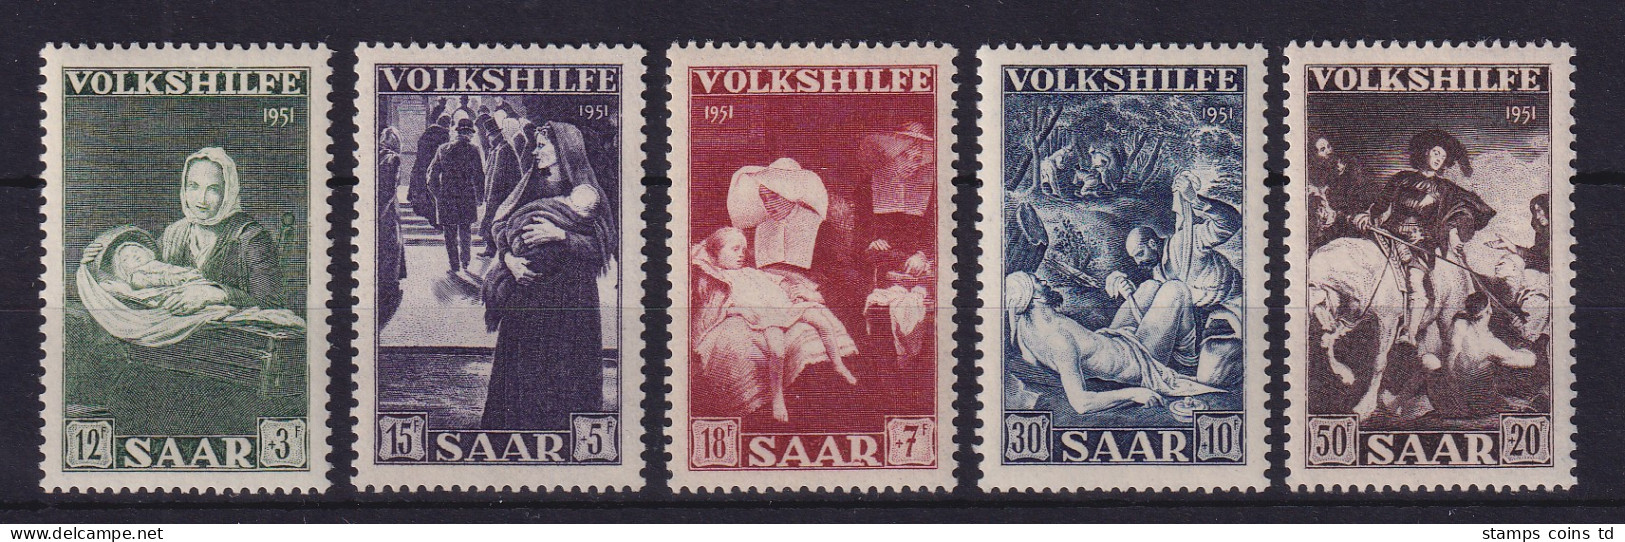 Saarland 1951 Volkshilfe  Mi.-Nr. 309-313 Postfrisch ** - Neufs